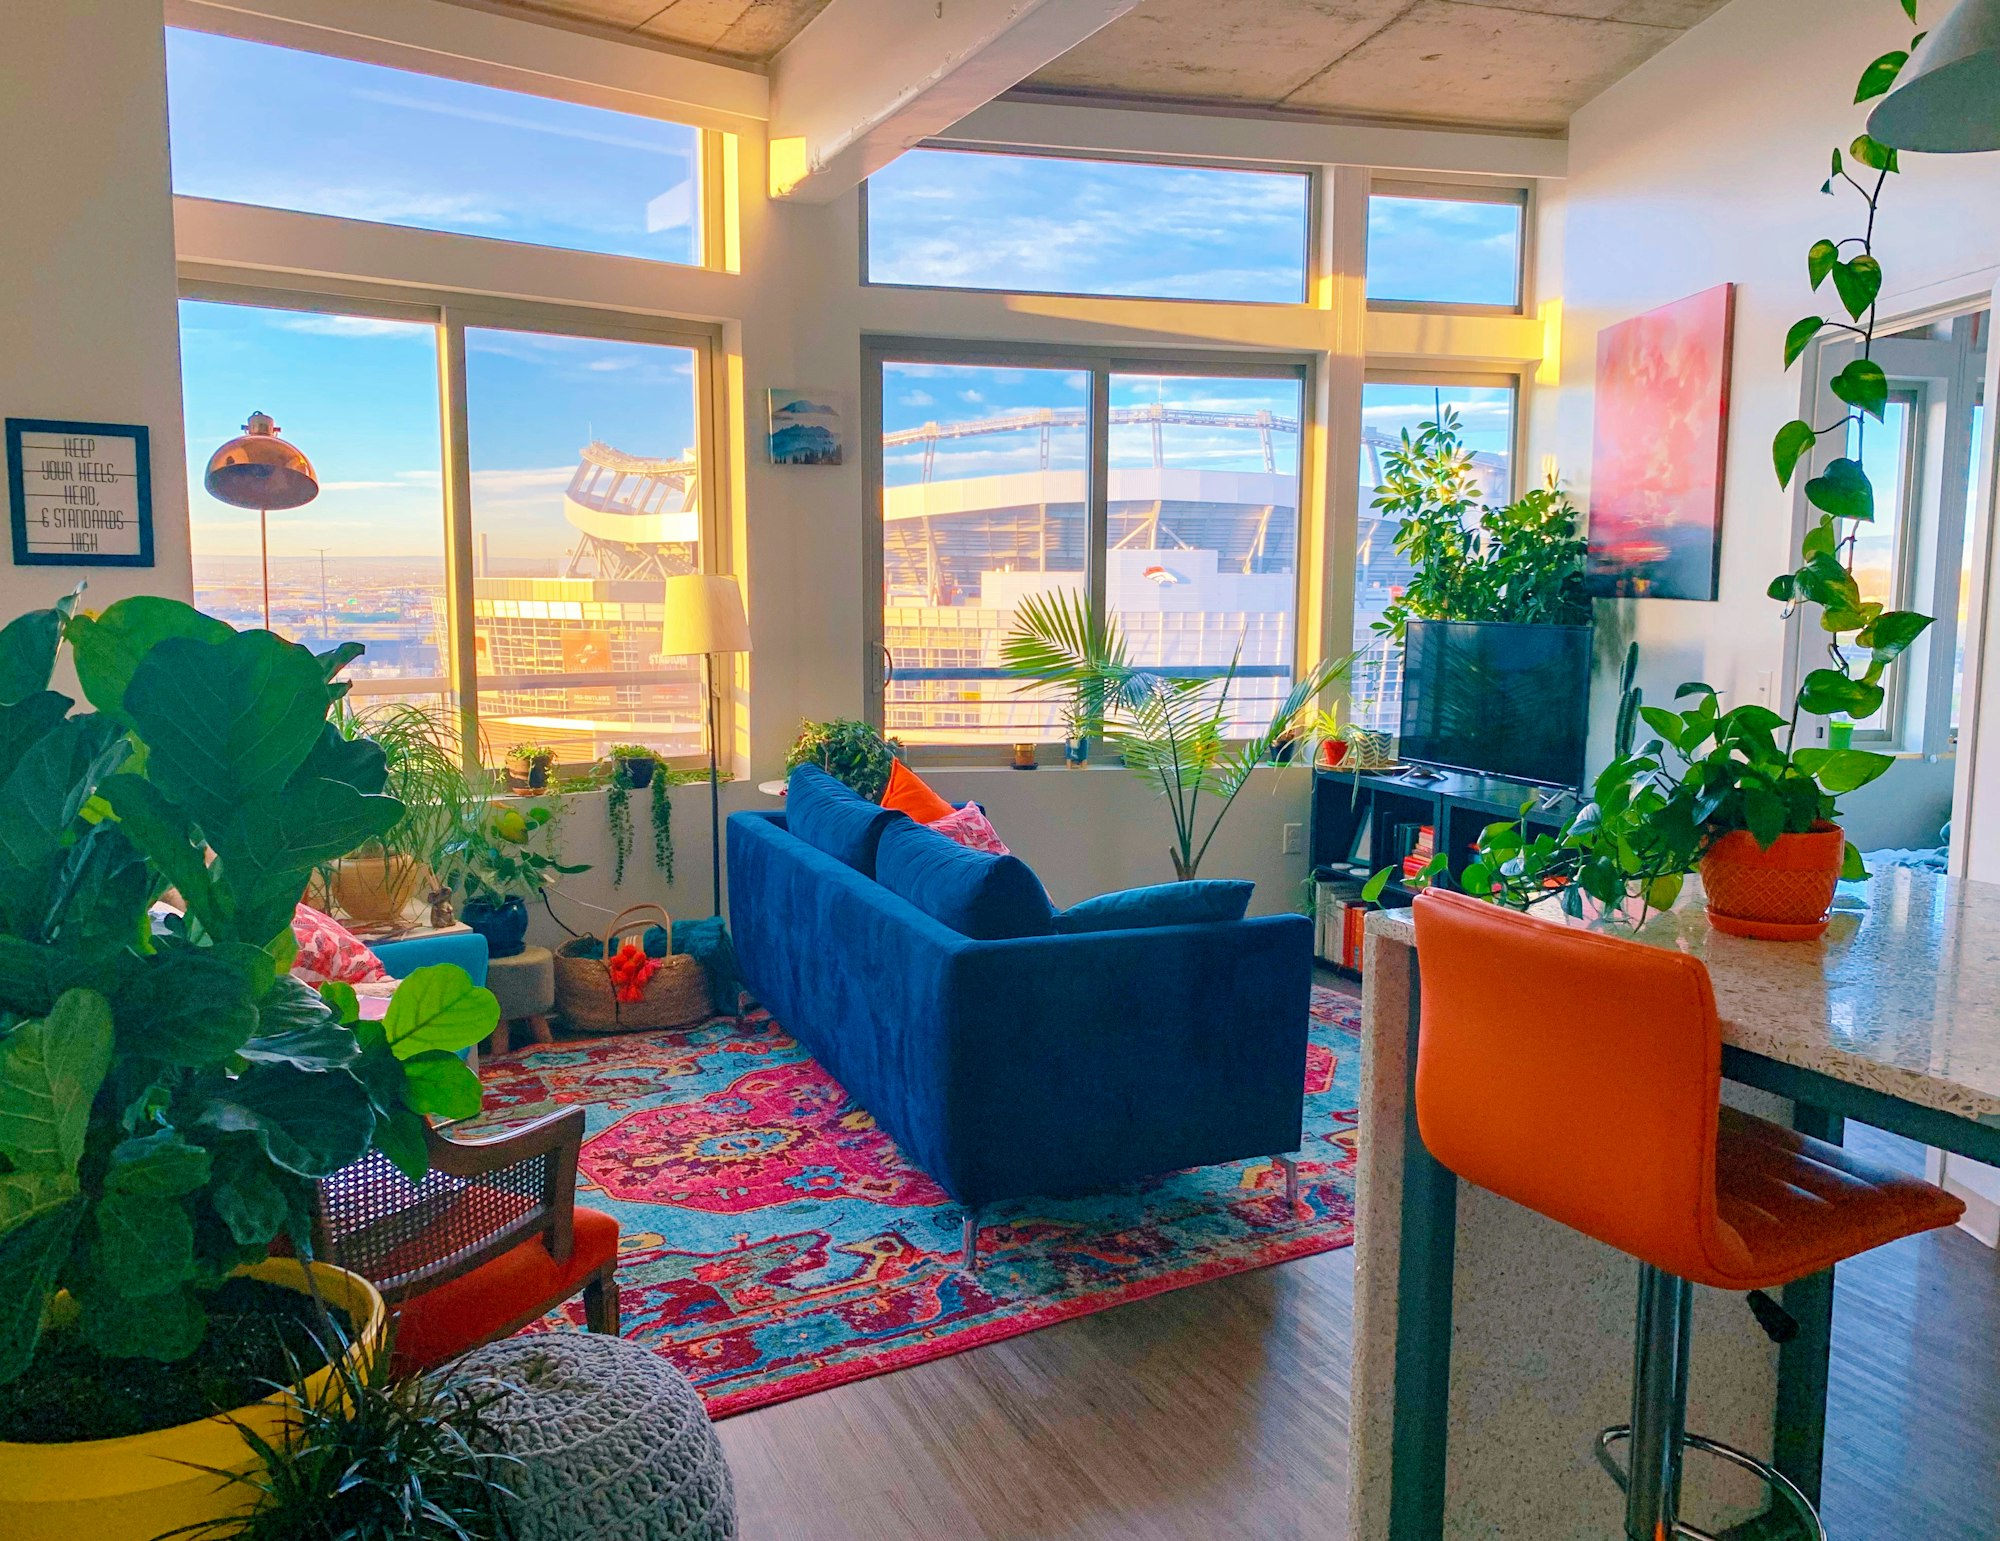 Boho home decor in a Denver apartment next to Mile High Stadium